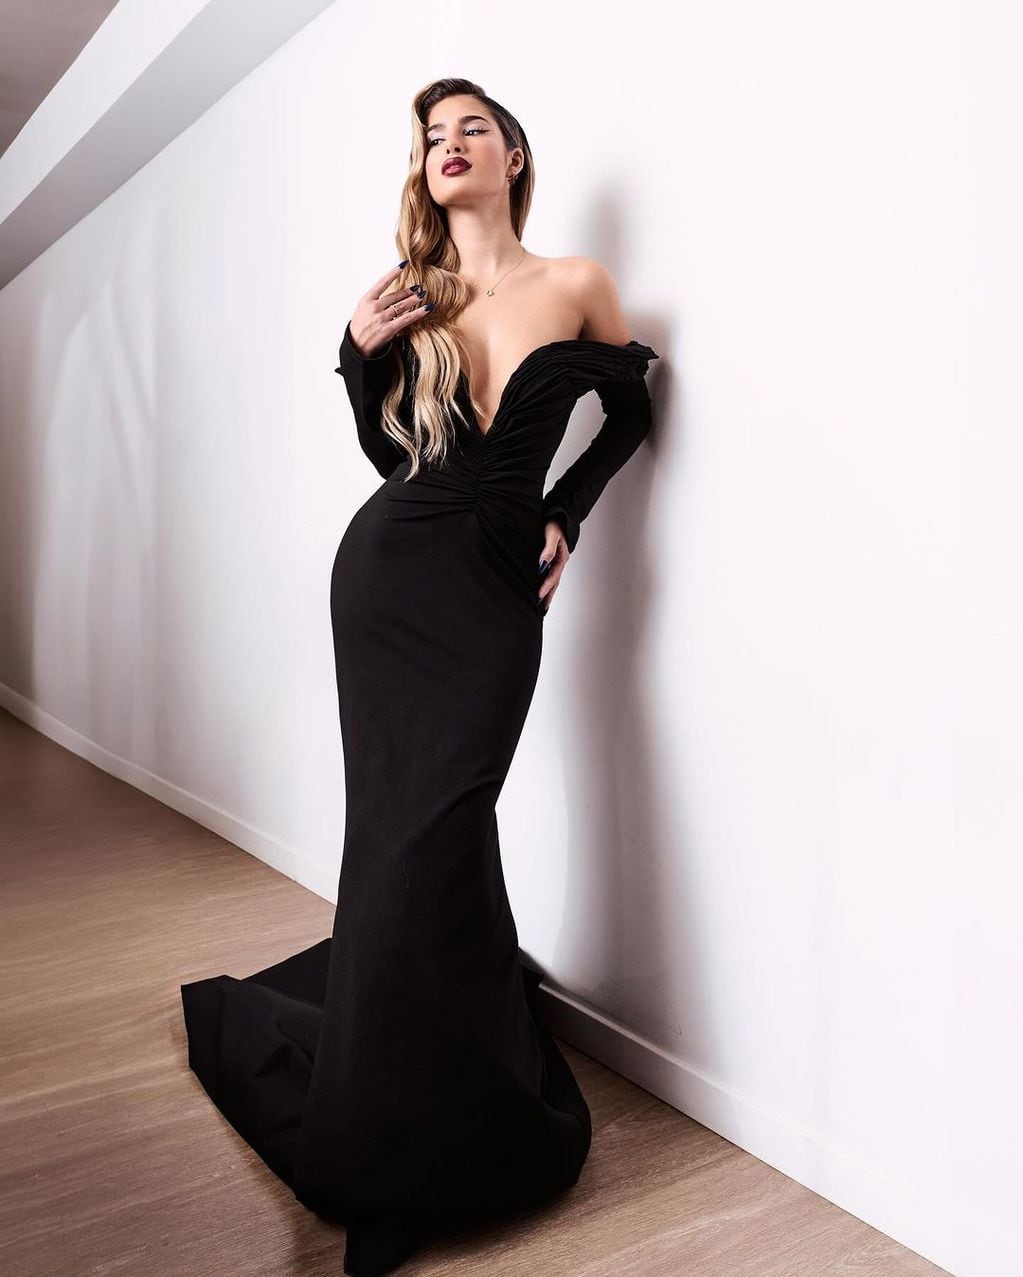 Julieta Poggio se vistió de gala y encendió Instagram con un vestido de noche infartante